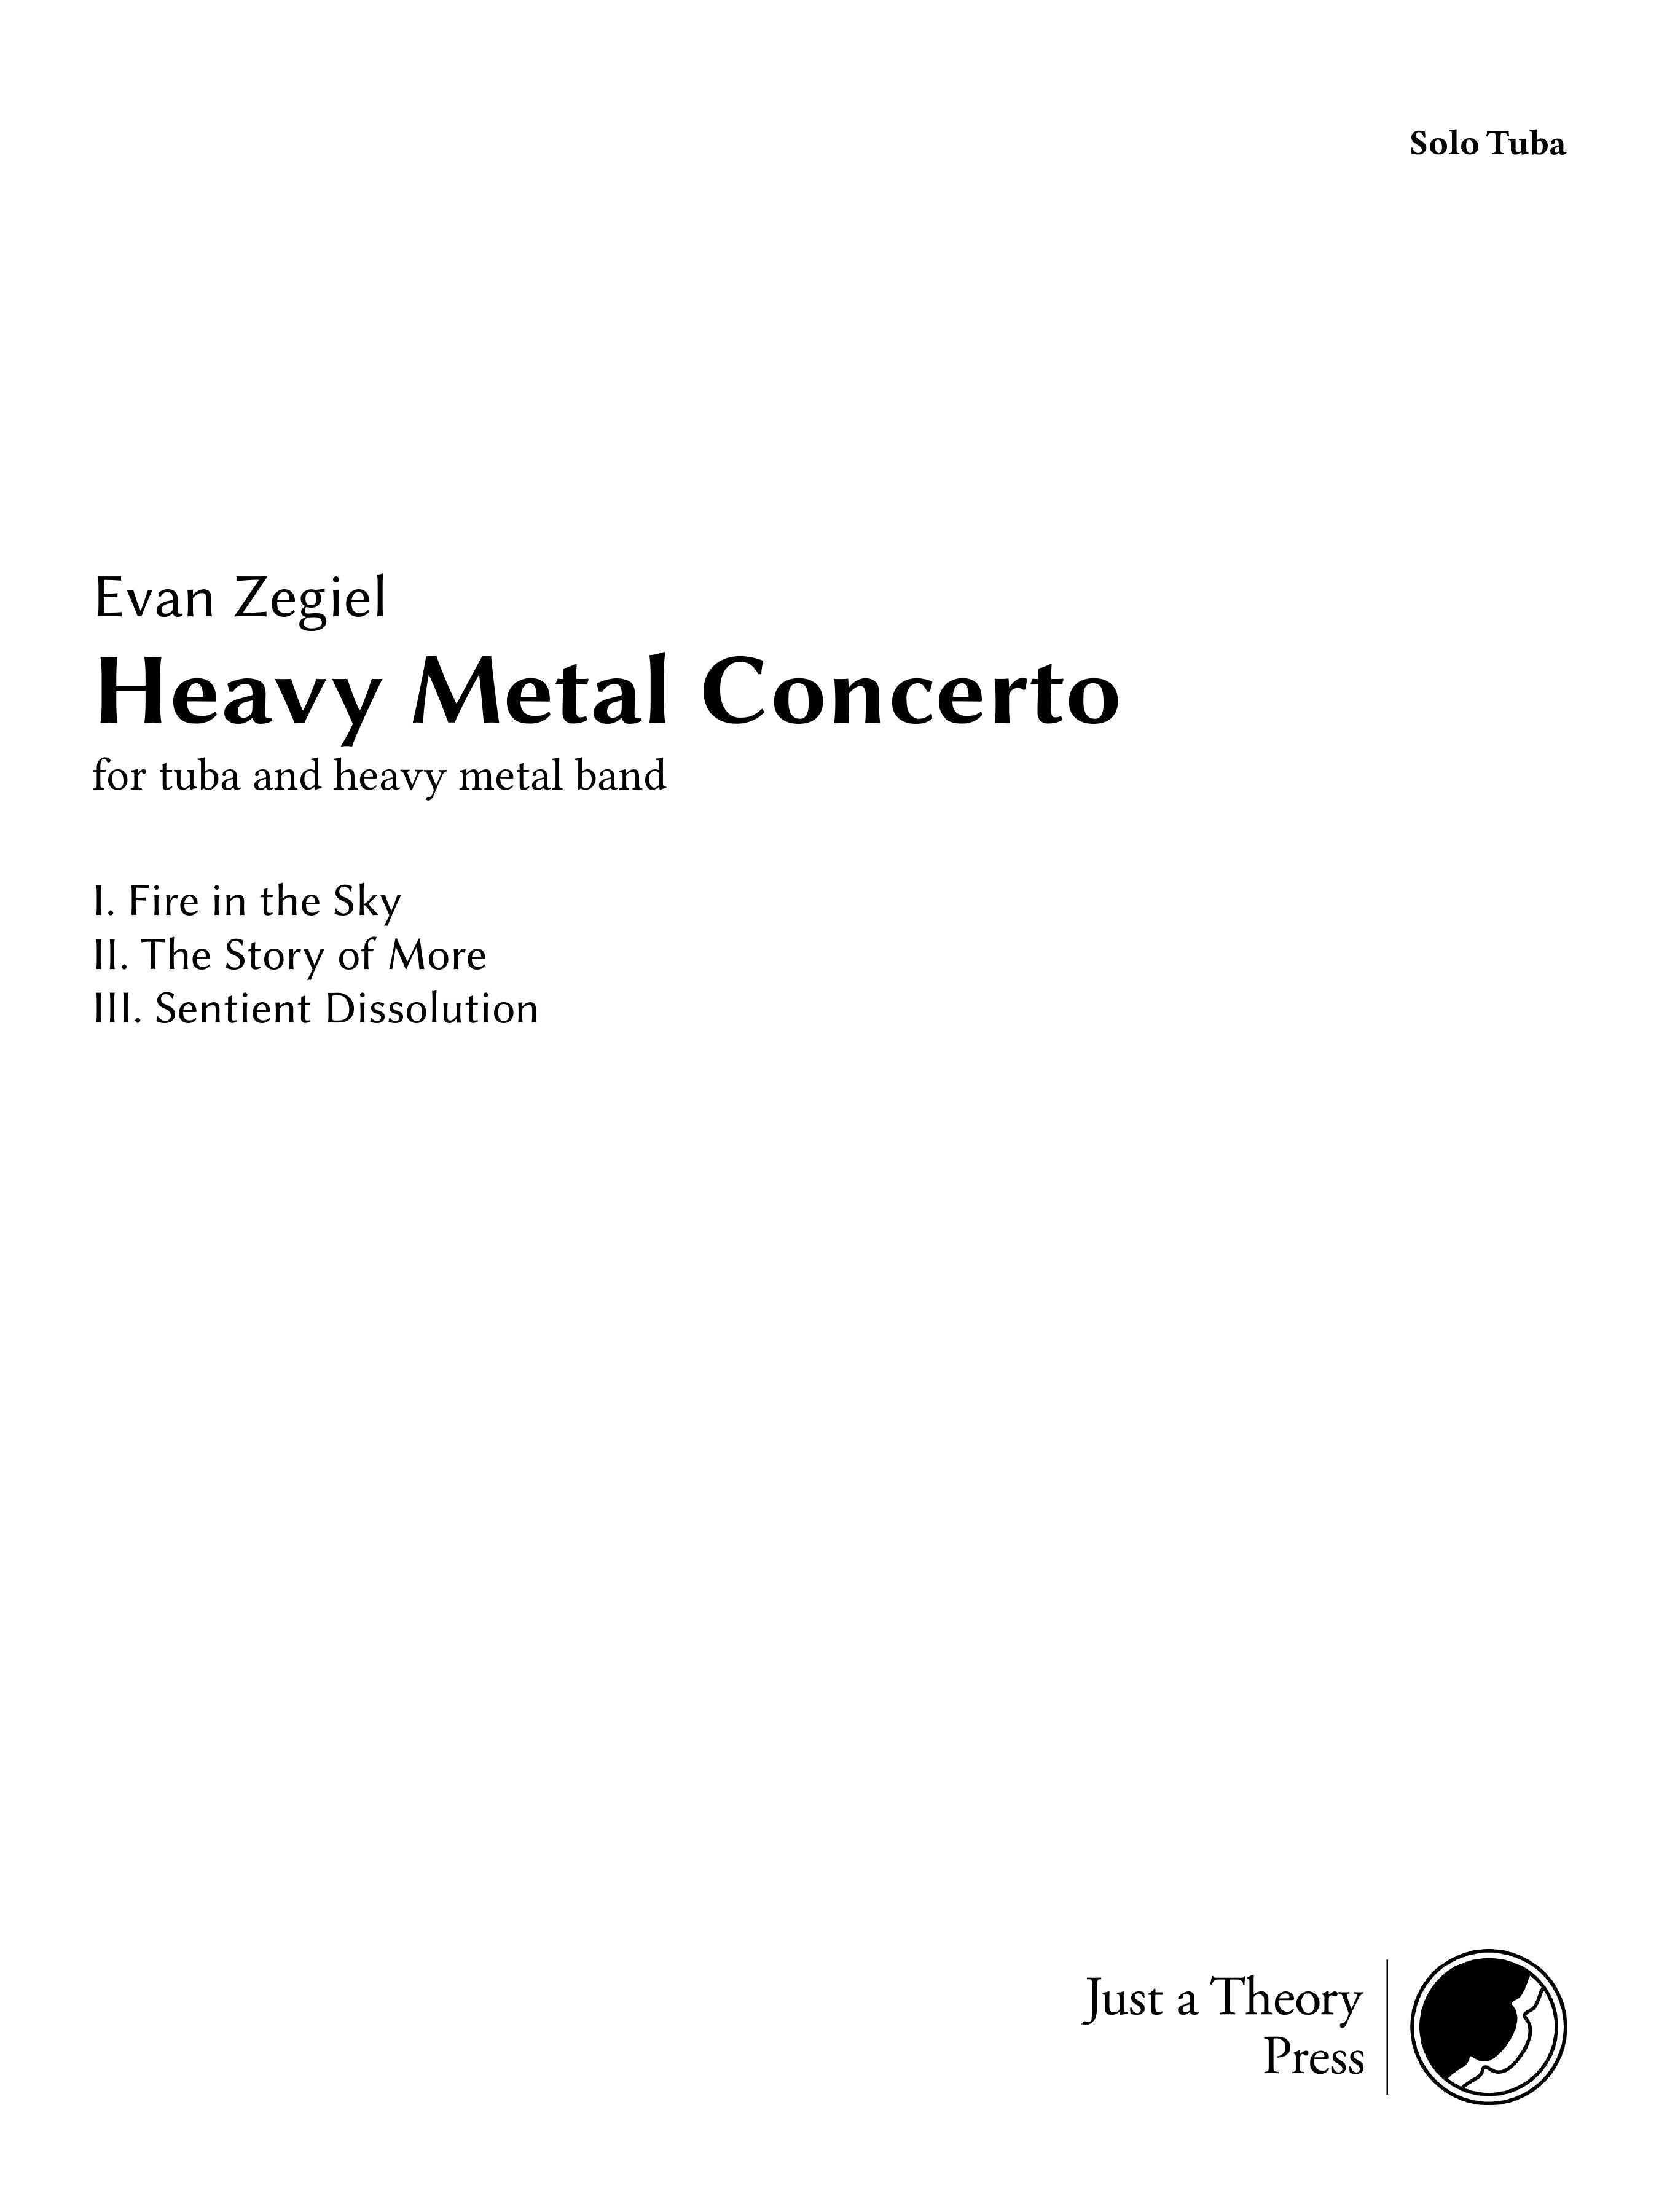 Heavy Metal Concerto